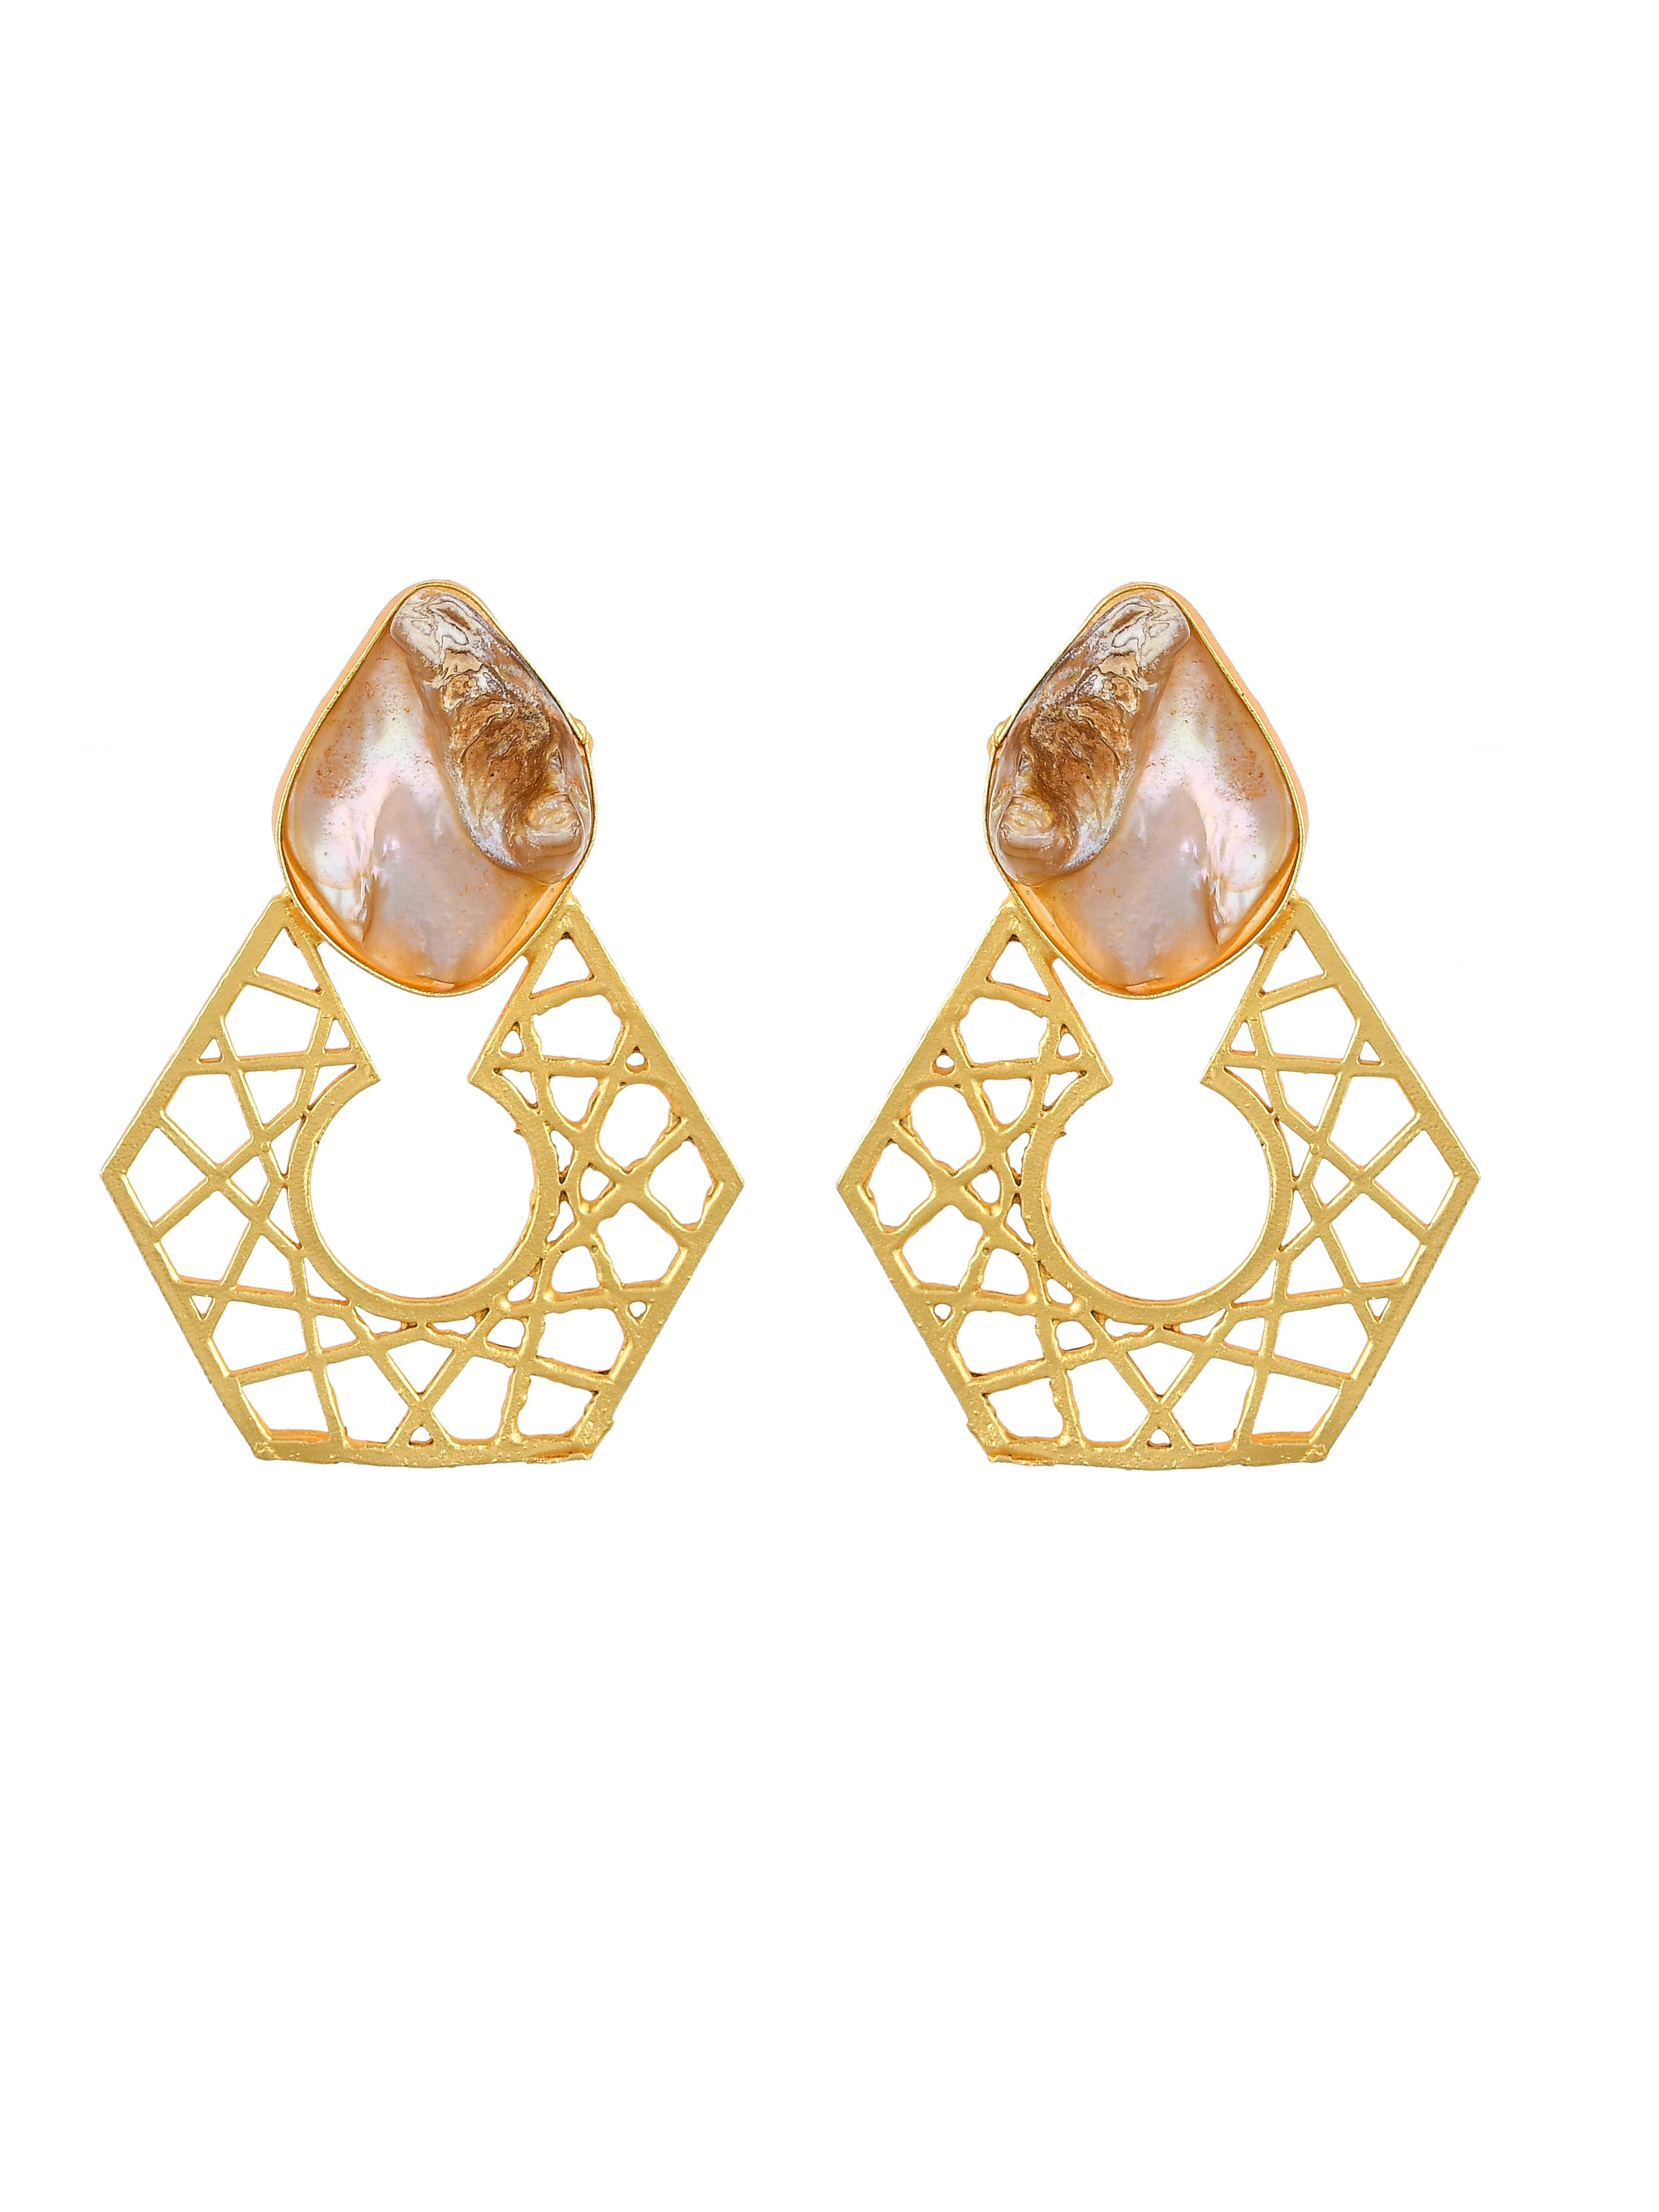 The Miffy Earrings in Gold | En Route Jewelry